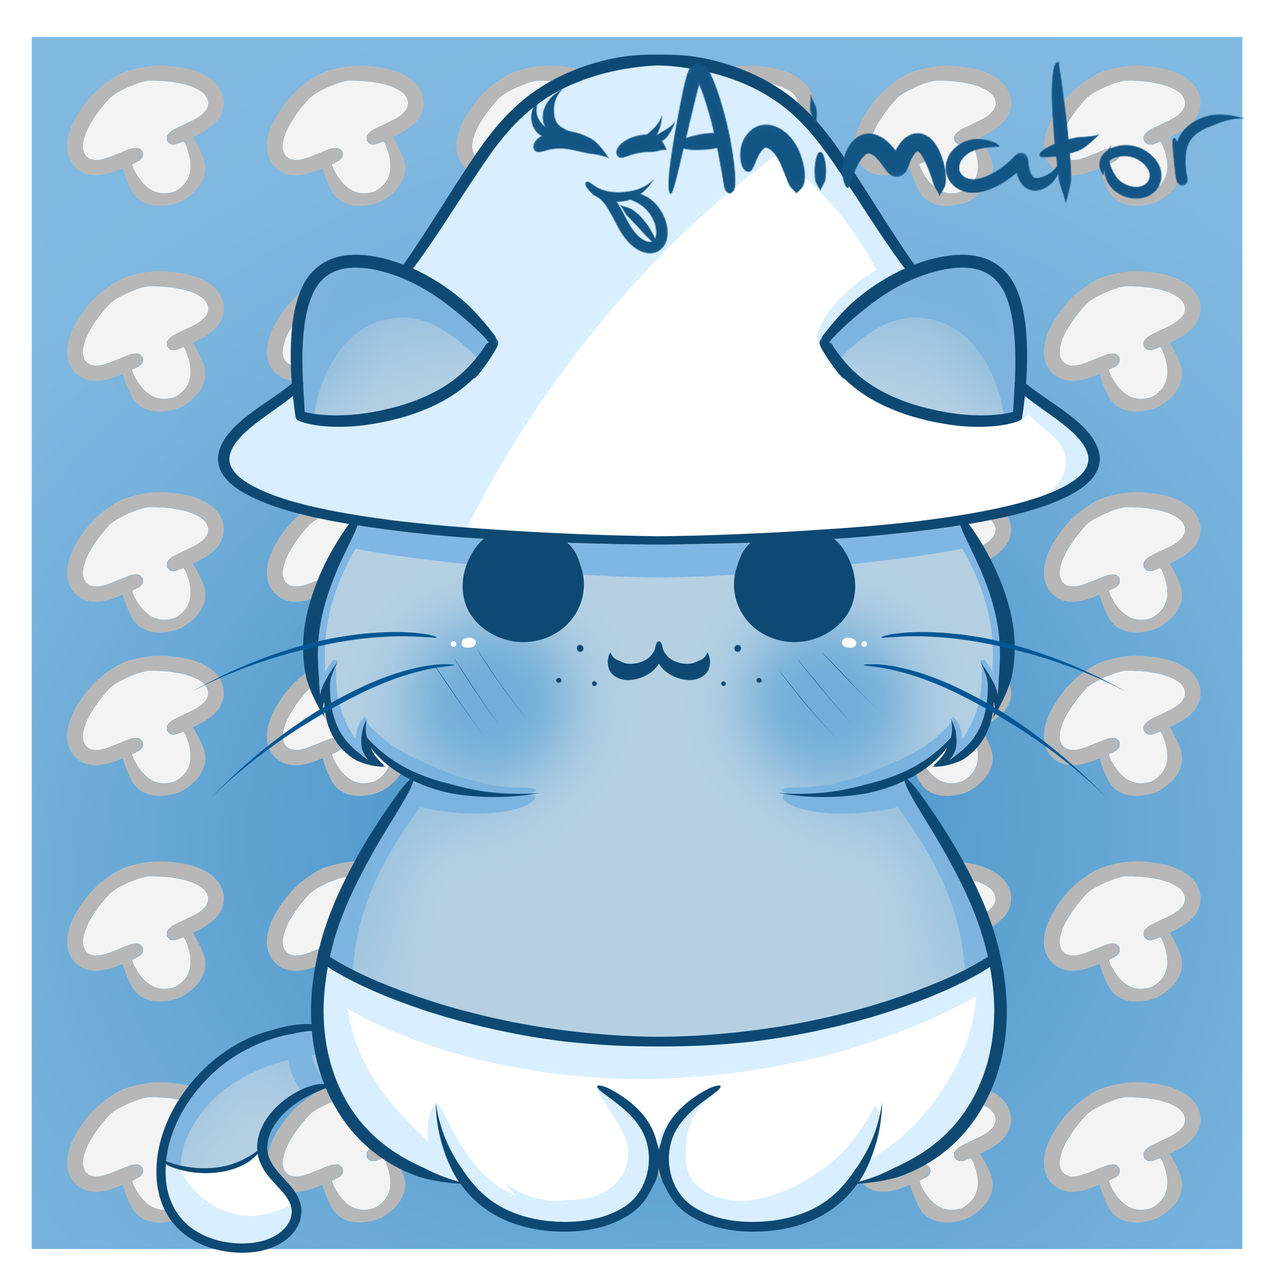 Smurf Cat by annimatour on DeviantArt